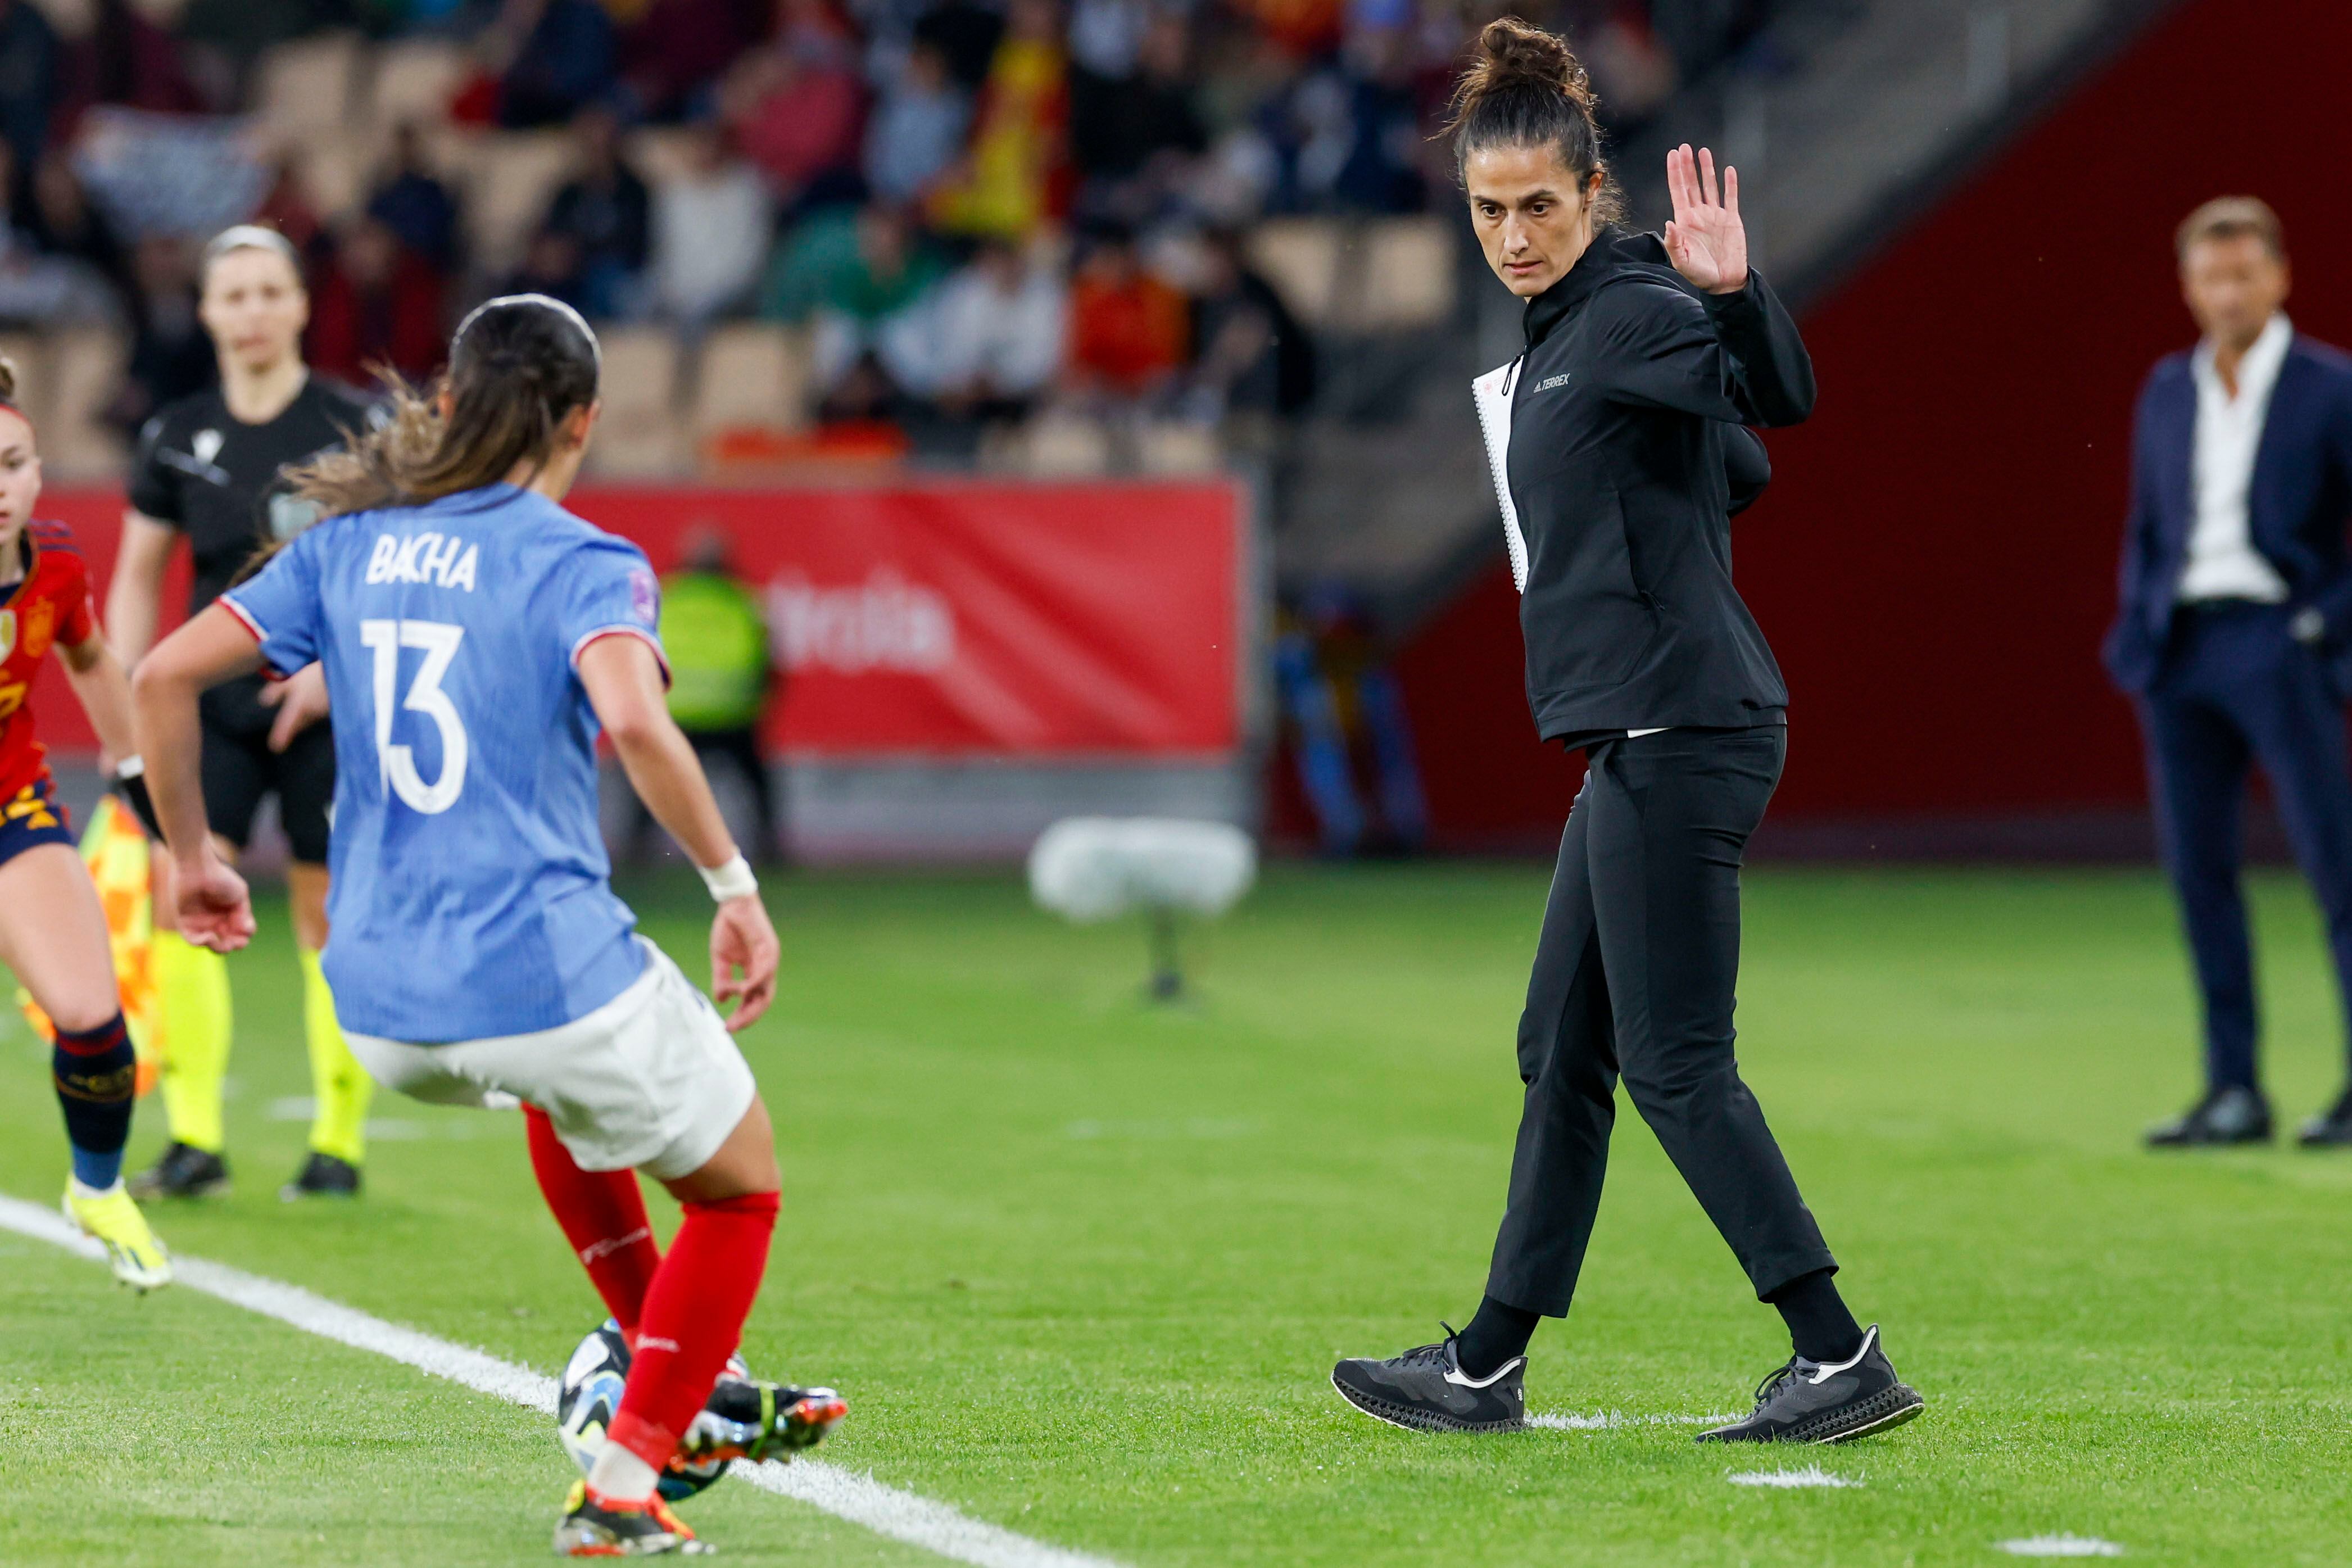 La seleccionadora de España, Montse Tomé (a la derecha), durante la final de la Liga de Naciones Femenina entre España y Francia, este miércoles en el Estadio de La Cartuja en Sevilla.